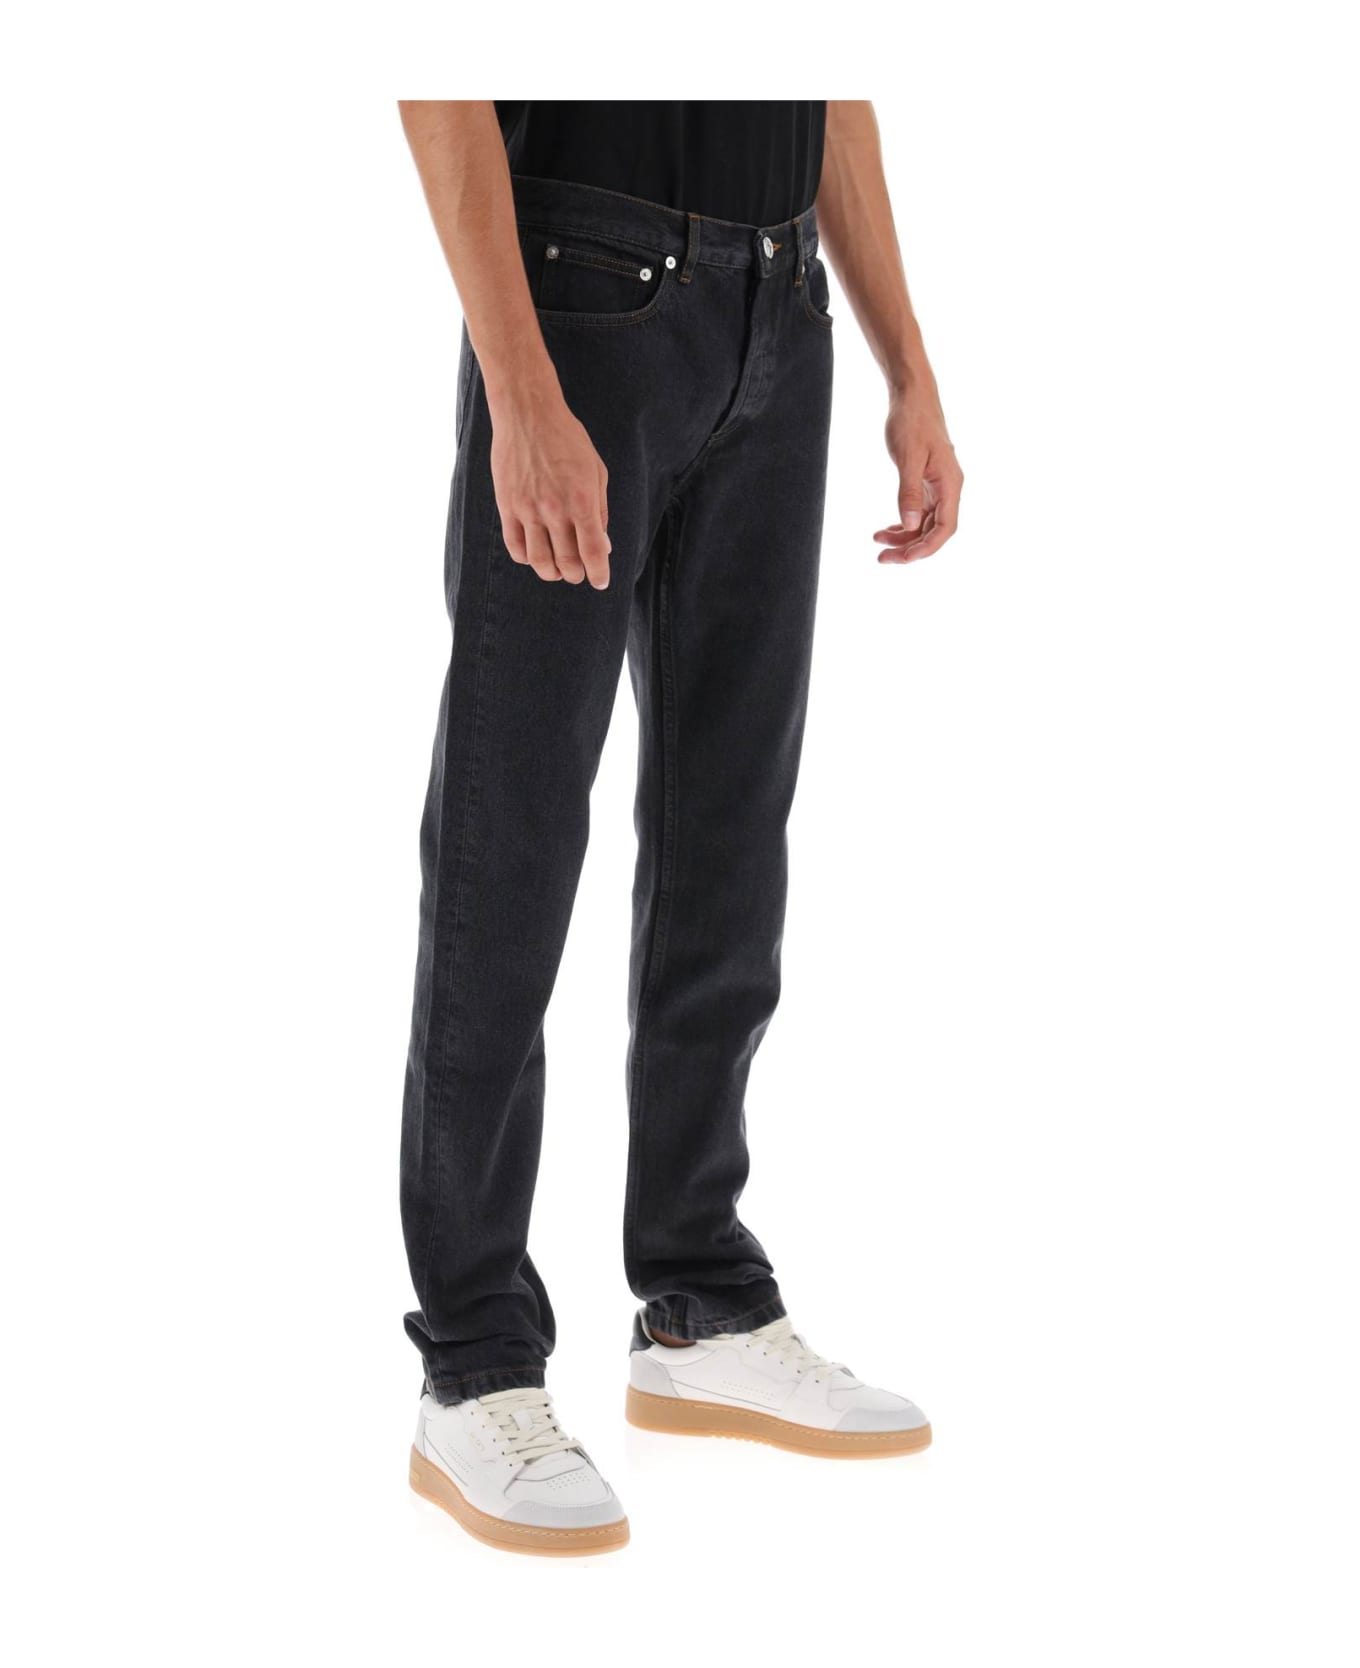 A.P.C. Petit New Standard Jeans - NOIR DELAVE (Black) デニム